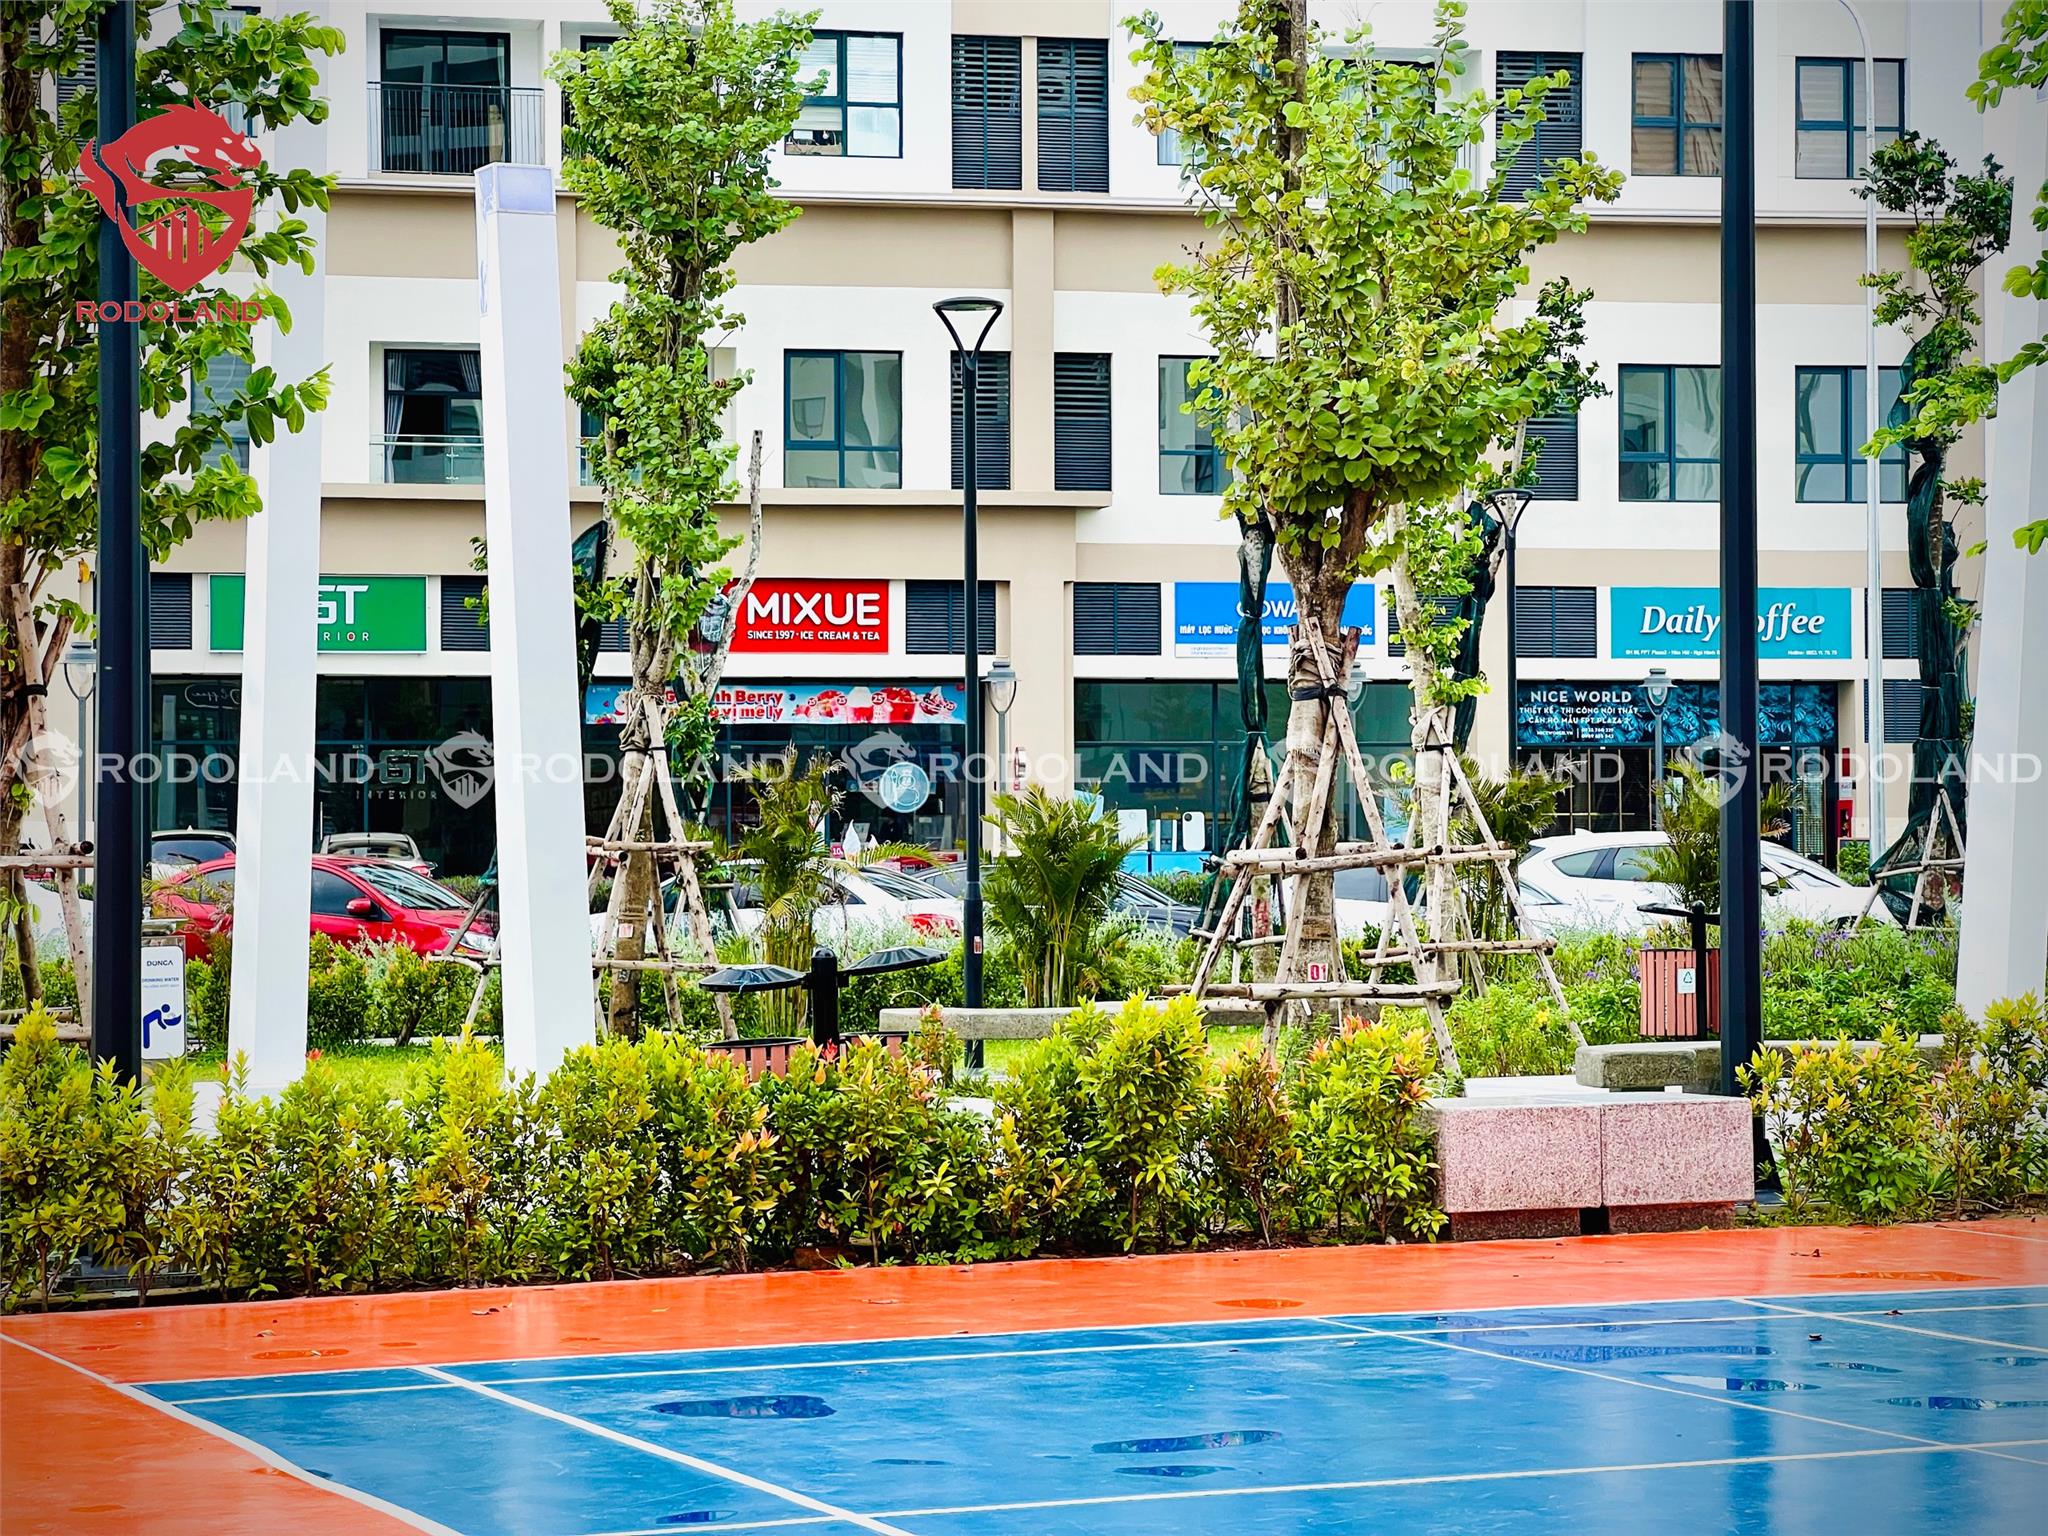 CHUYÊN FPT: Cần cho thuê căn hộ FPT Plaza Đà Nẵng - Lliên hệ BĐS Rồng Đỏ 0905.31.89.88 3